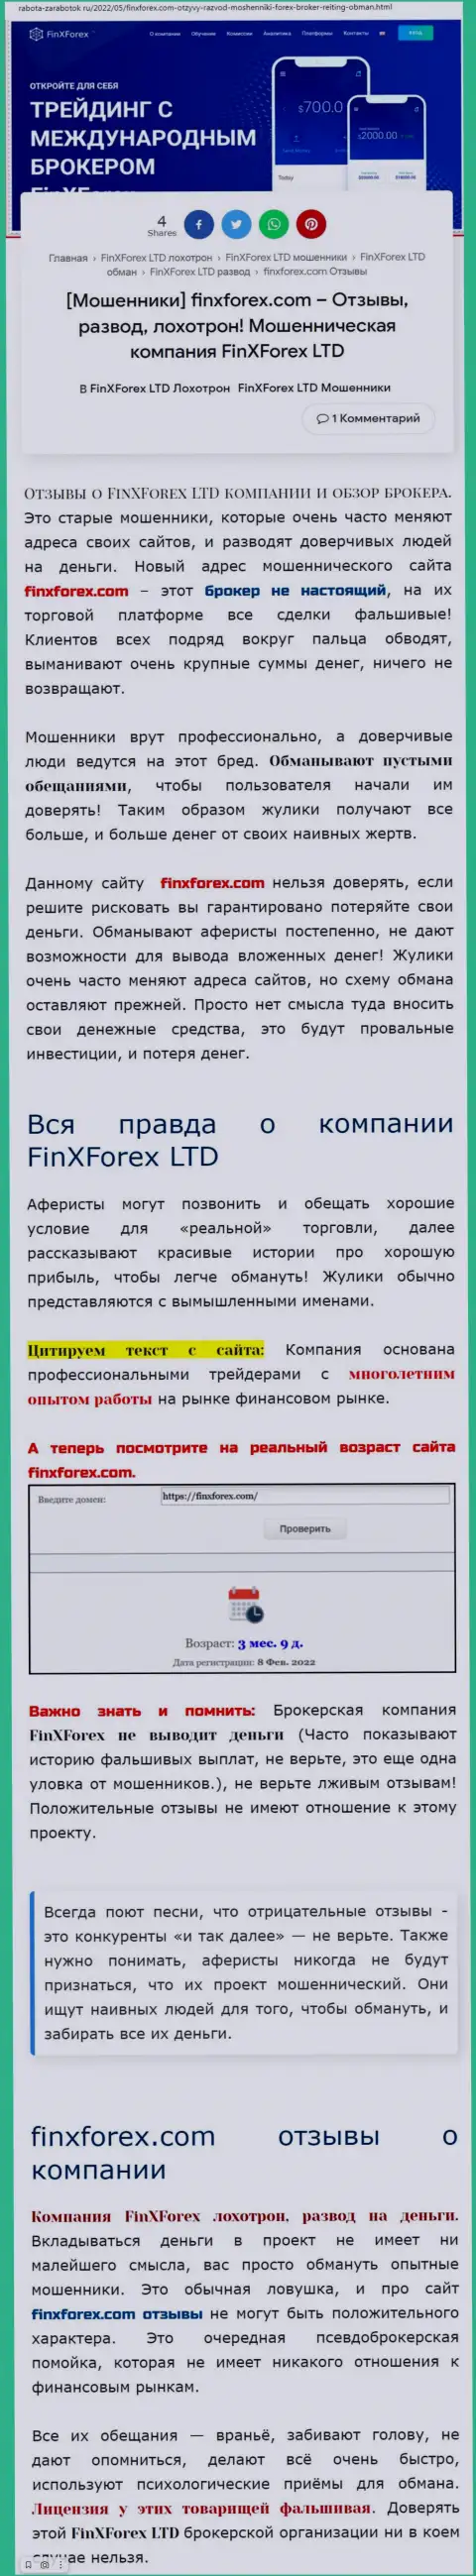 Автор обзорной статьи о FinXForex утверждает, что в FinXForex LTD лохотронят